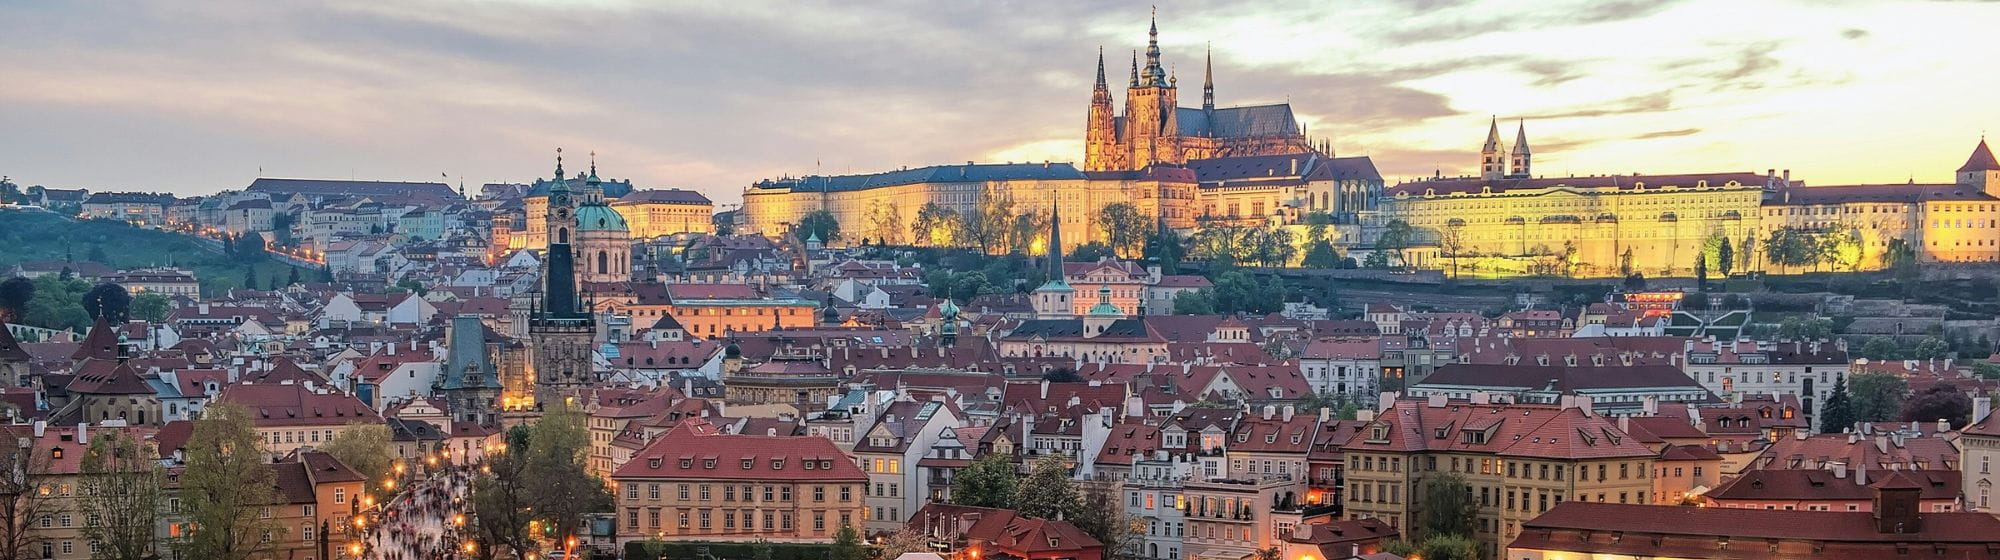 Photo de la ville de Prague prise par William Zhang